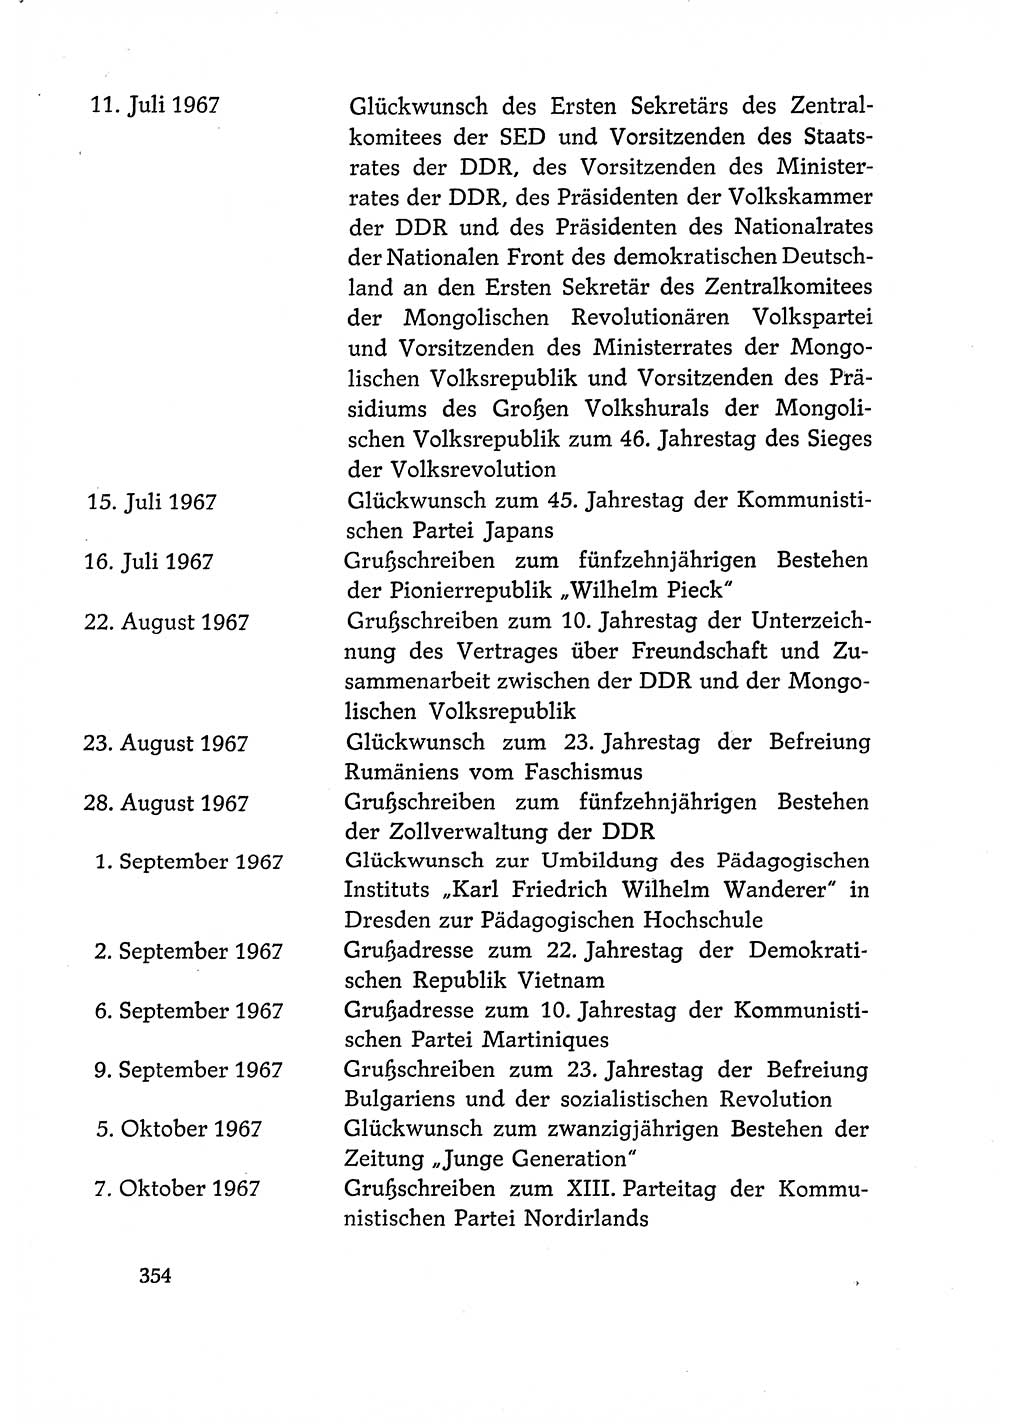 Dokumente der Sozialistischen Einheitspartei Deutschlands (SED) [Deutsche Demokratische Republik (DDR)] 1966-1967, Seite 354 (Dok. SED DDR 1966-1967, S. 354)